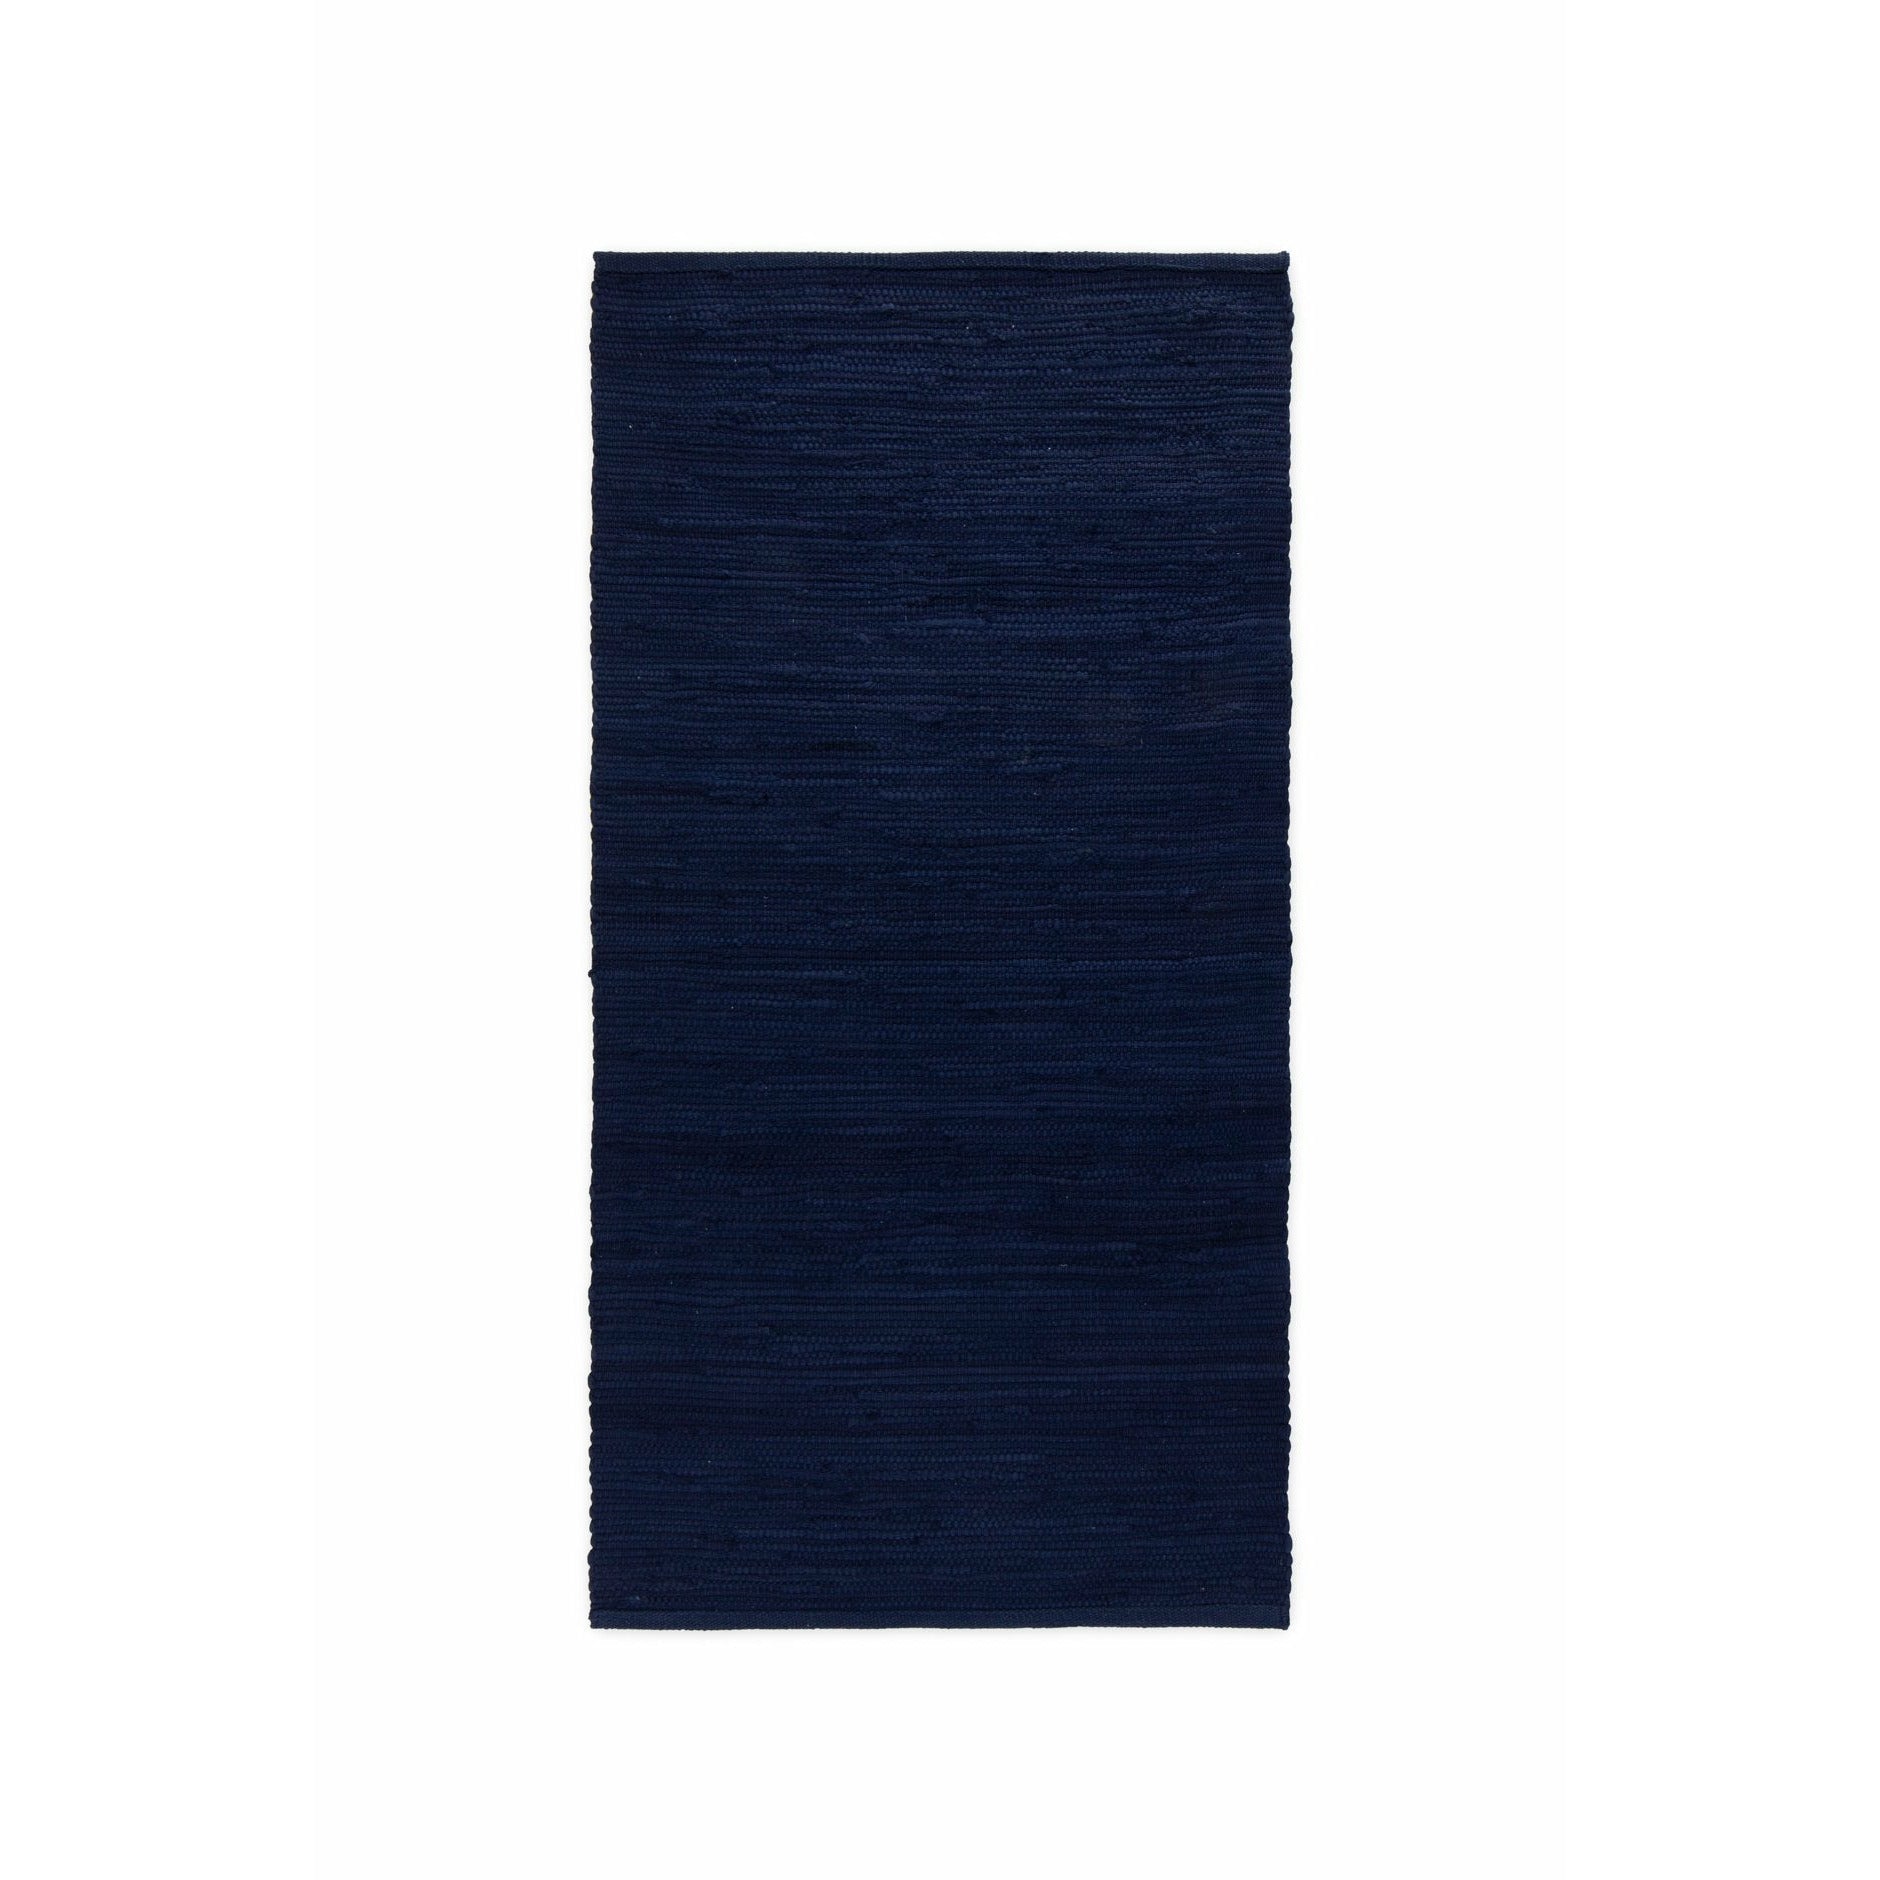 Rug Solid Bomullsfilt djupa hav blått, 140 x 200 cm